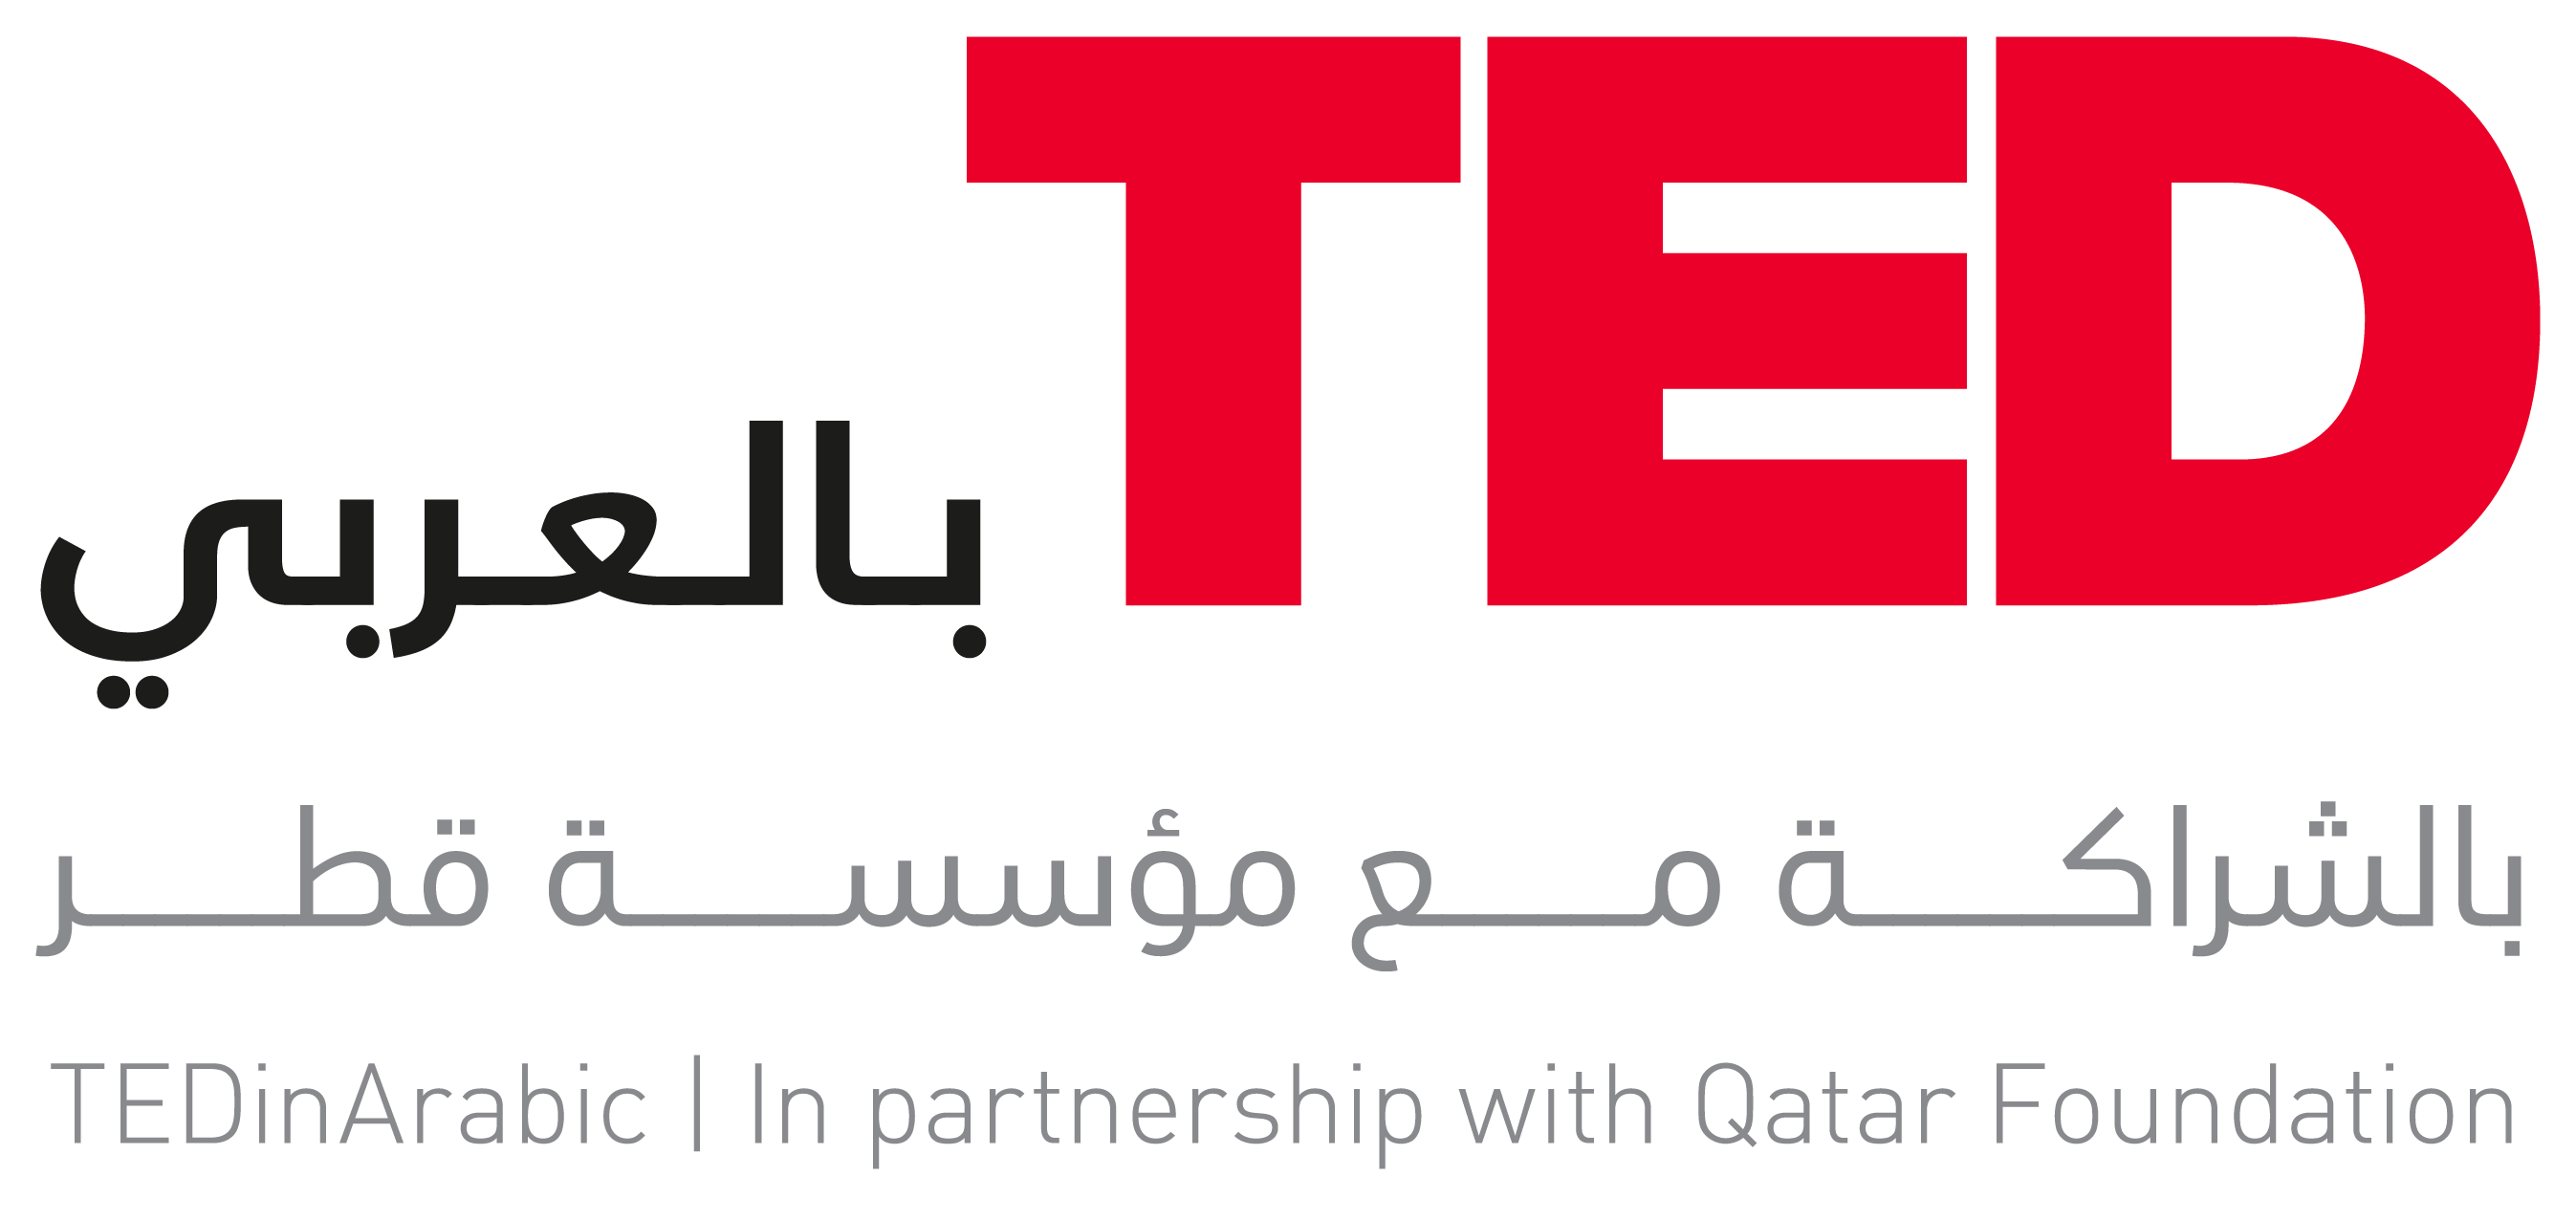 TED and Qatar Foundation Unveil TEDinArabic